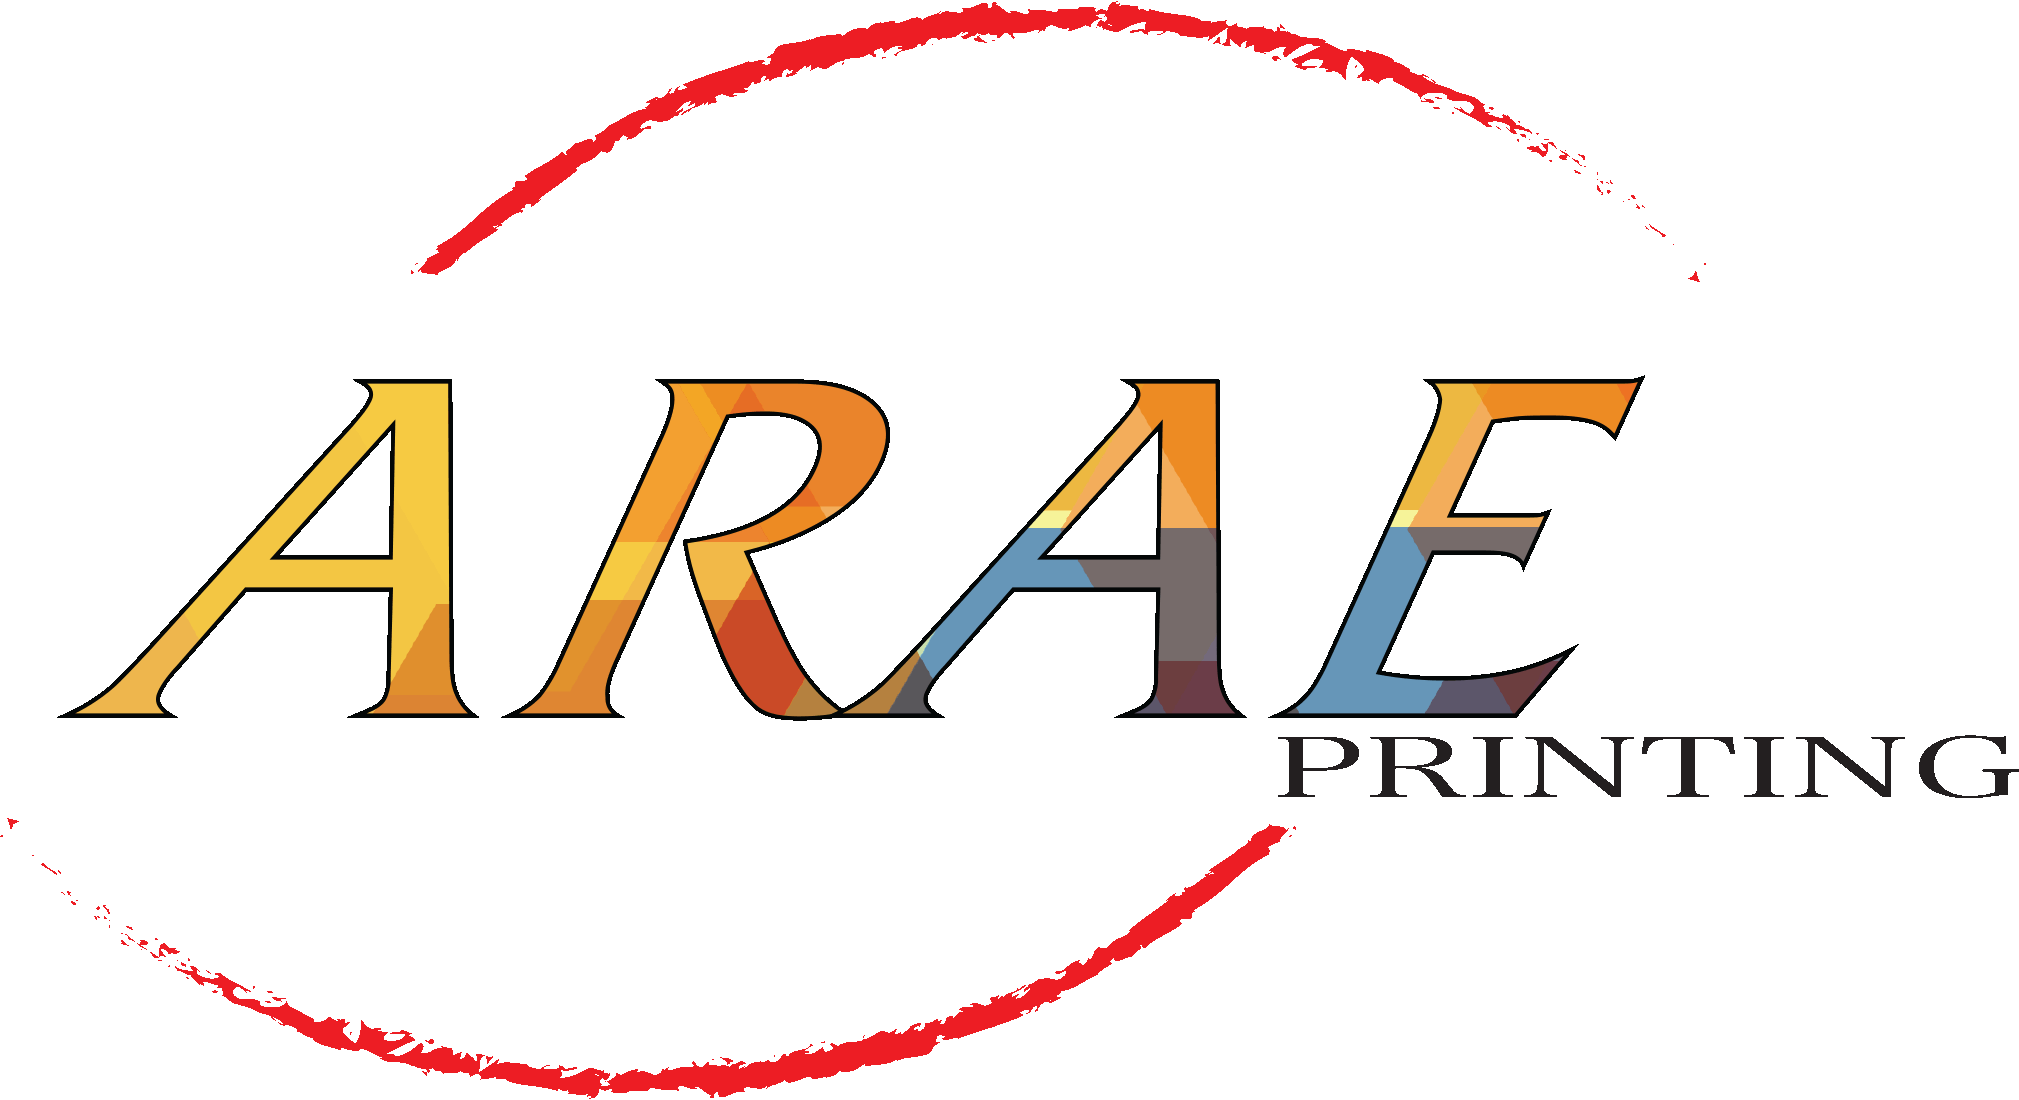 ARAE printing